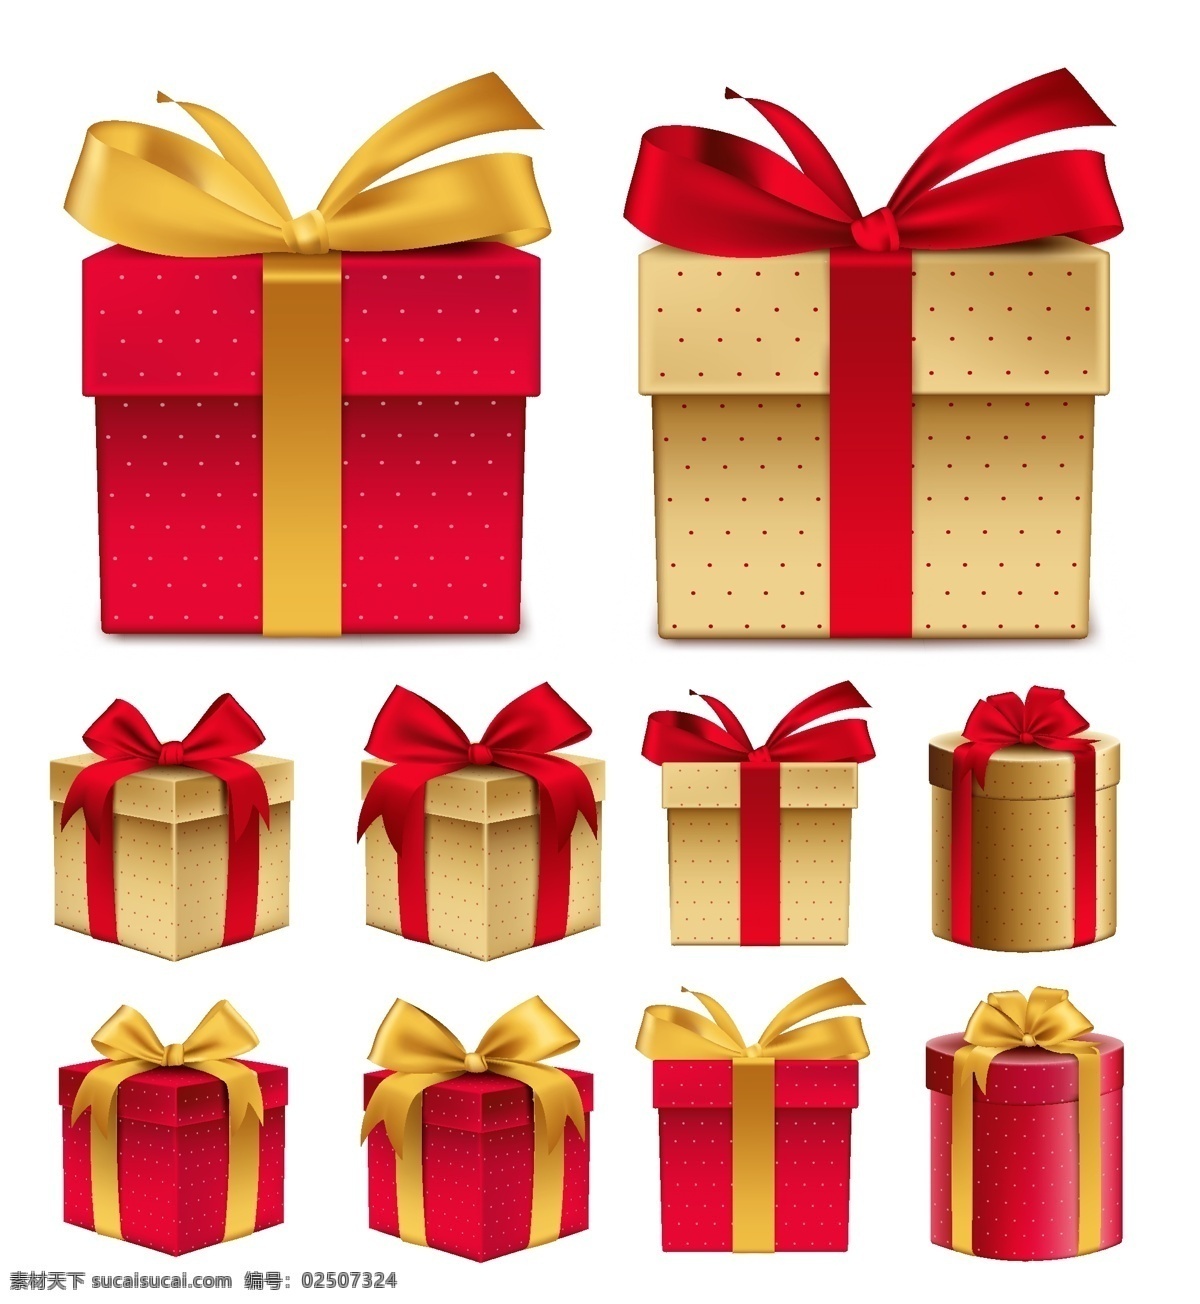 视角 彩色 礼品盒 包装 矢量 彩色礼品 圣诞礼品 卡通礼盒 包裹 生日礼物 礼品 包装盒 卡通 背景 礼物 卡通背景 礼物背景